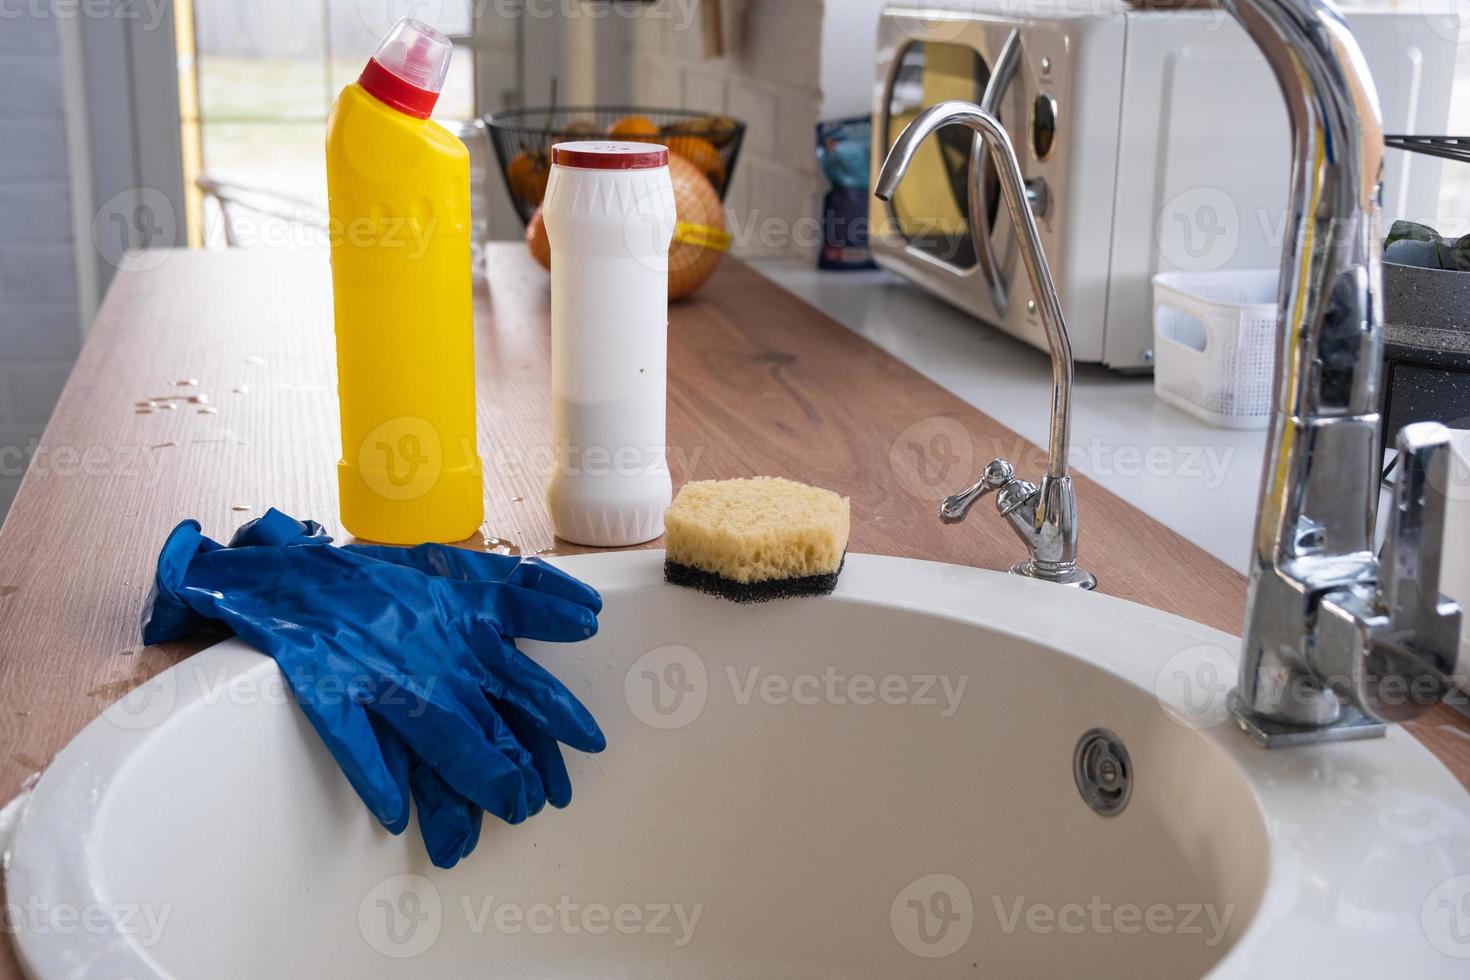 limpando a cozinha, detergente, pó seco, esponja, luvas estão na pia. decoração festiva na cozinha branca, interior aconchegante da casa foto